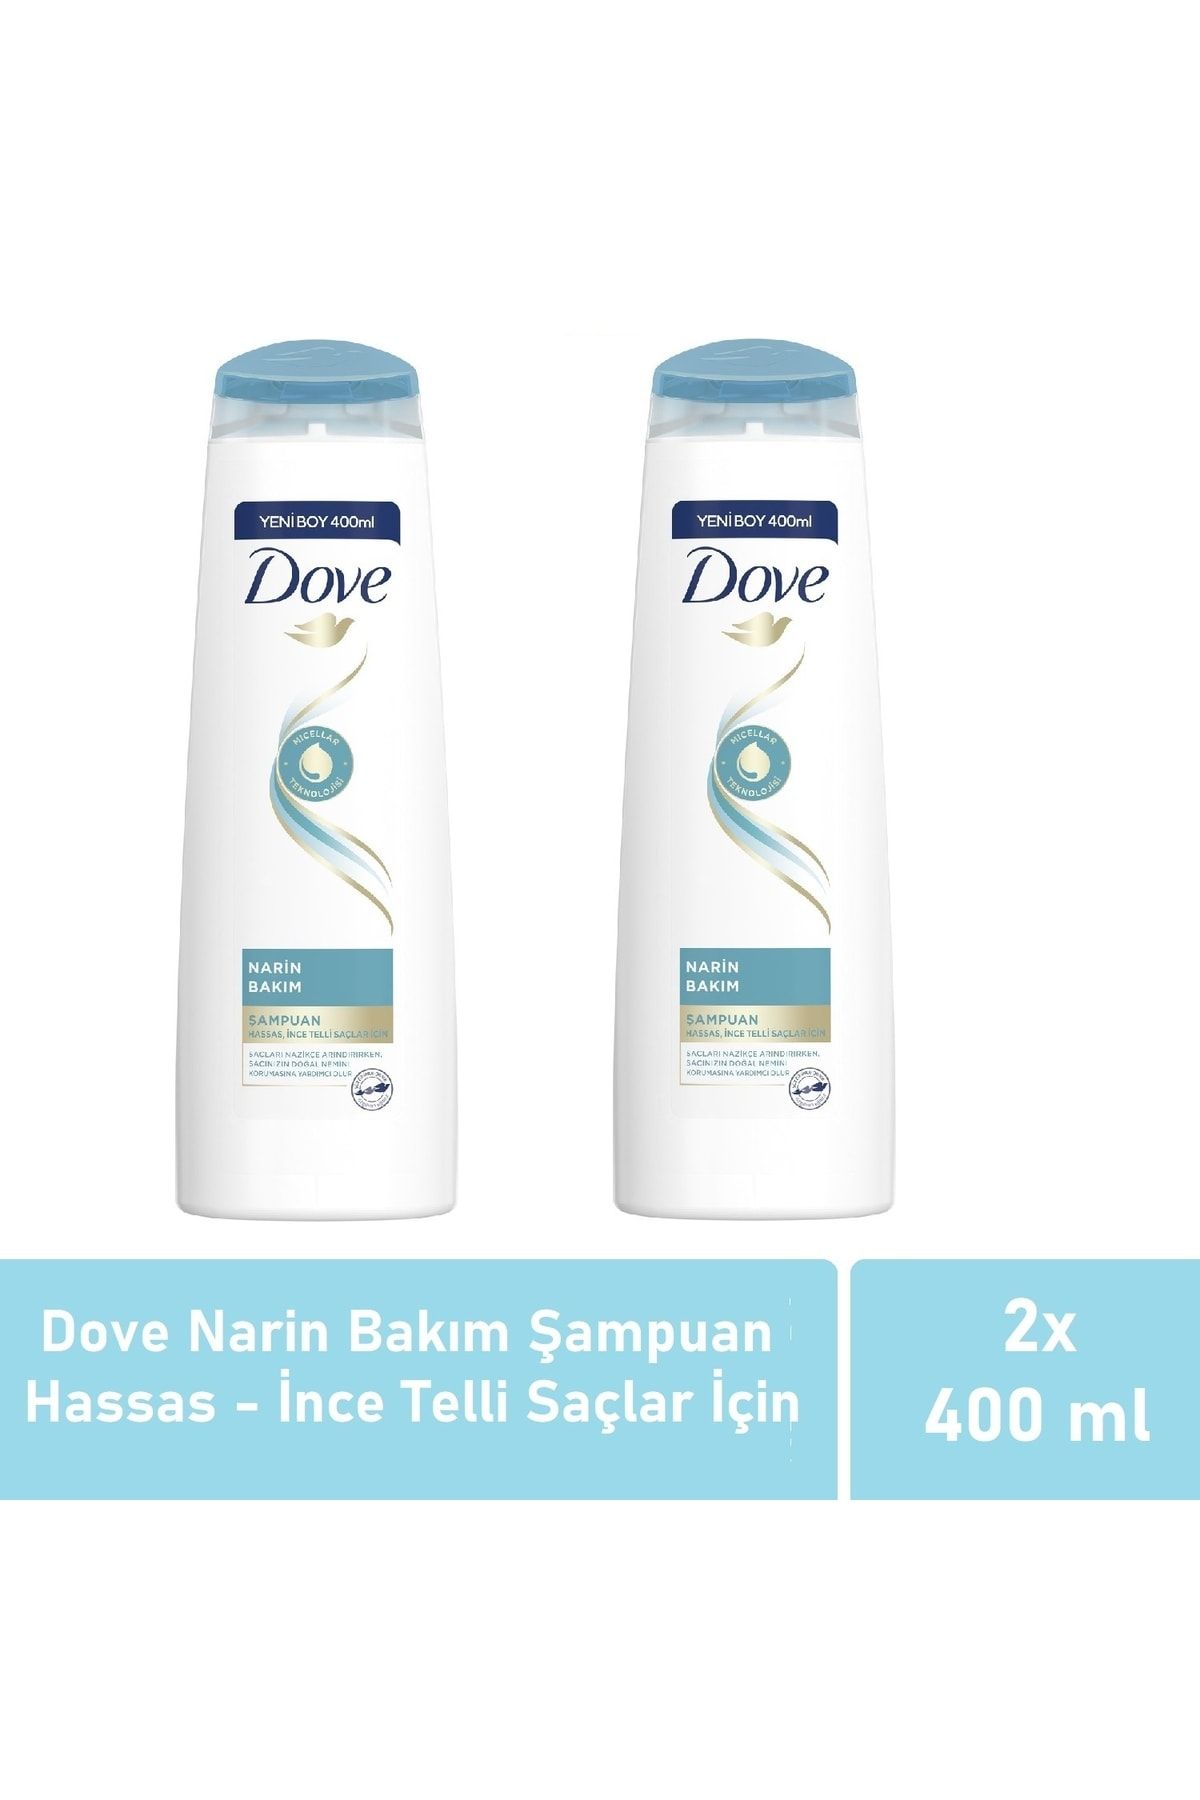 Dove Narin Bakım Şampuan Hassas, Ince Telli Saçlar Için 400 Ml - 2'li Avantaj Paketi